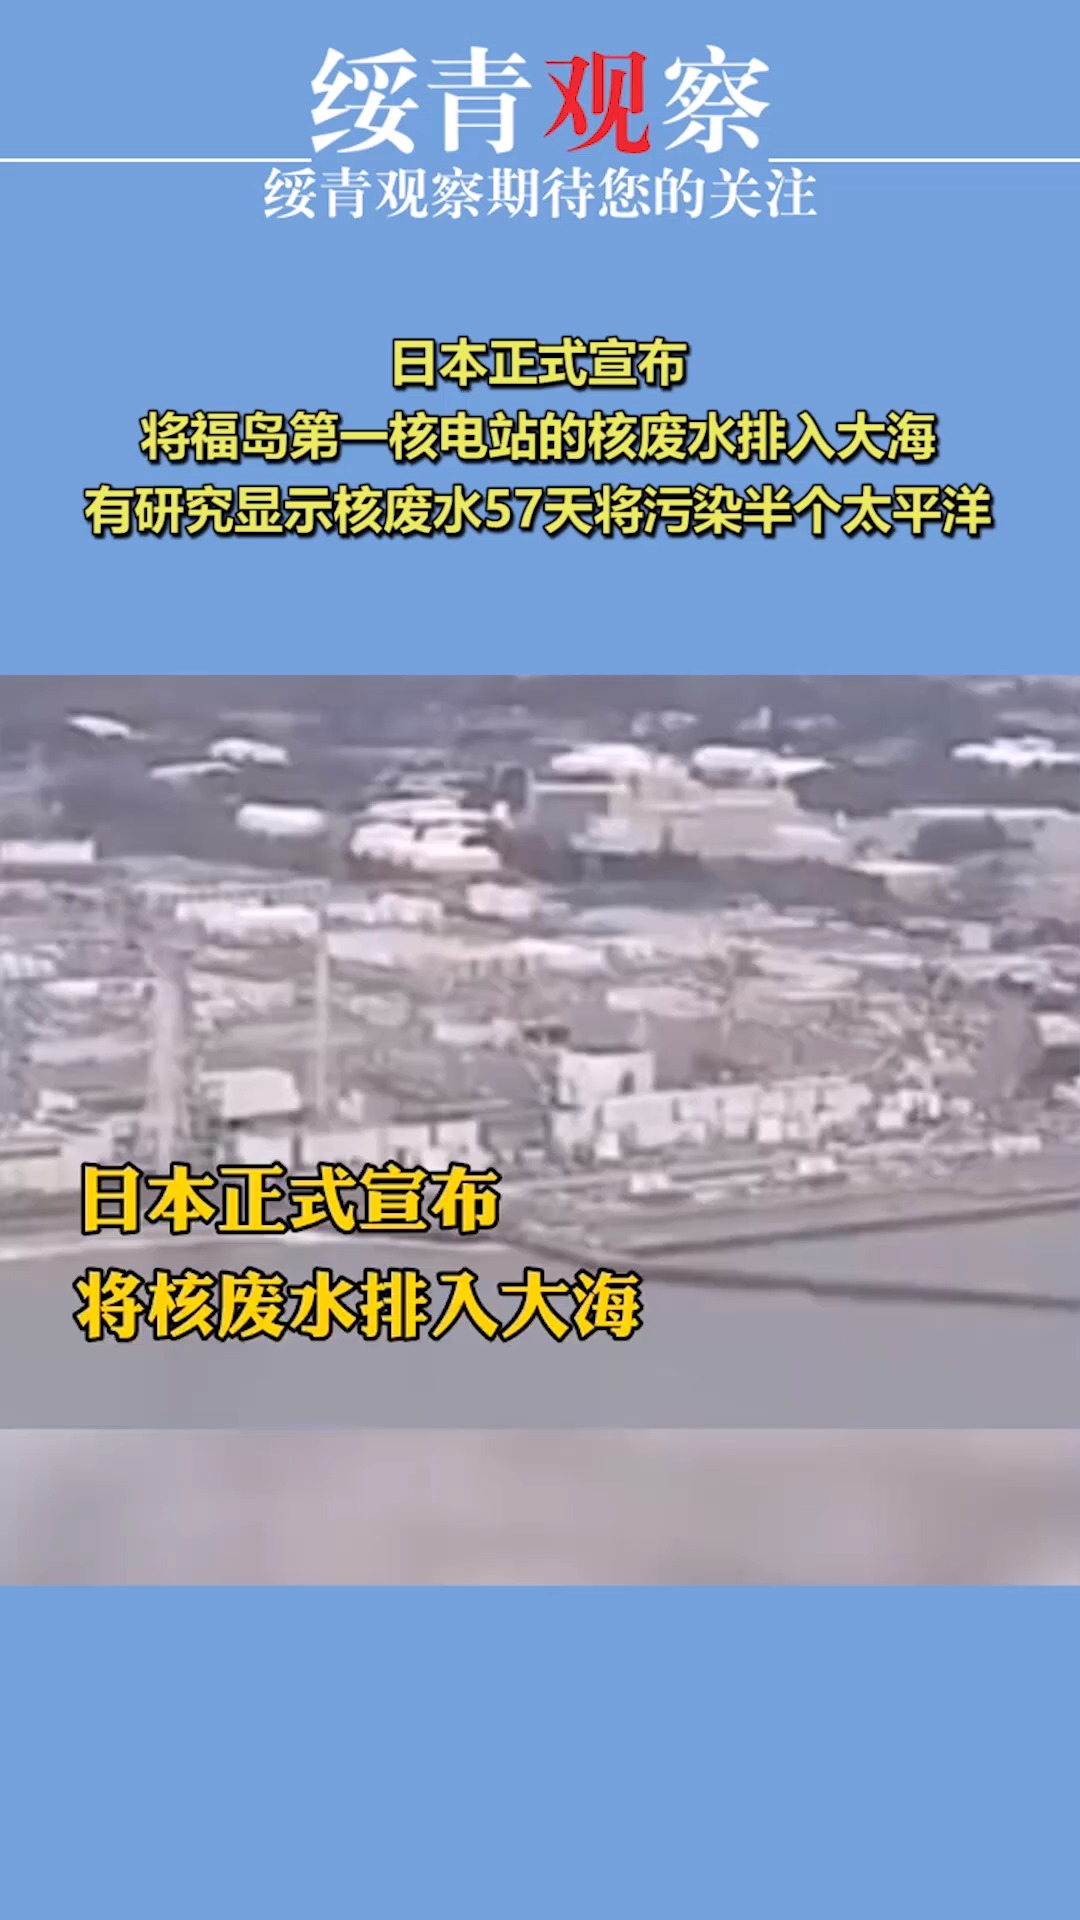 日本正式宣布,将核电站的核废水排入大海,有研究显示核废水57天将污染